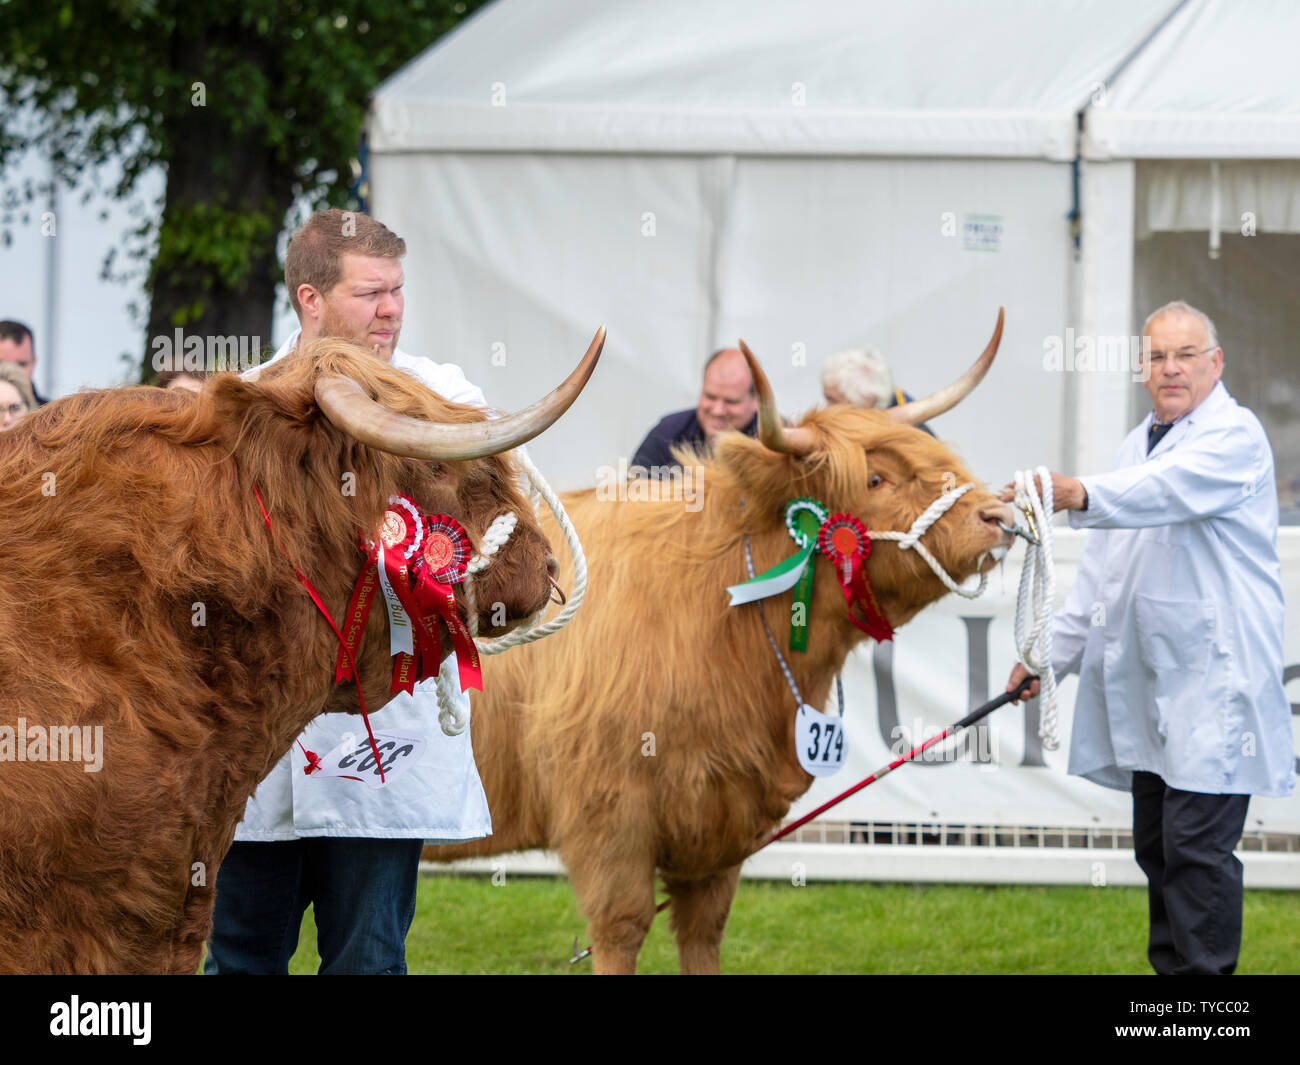 Bestiame delle Highland allo spettacolo Foto Stock